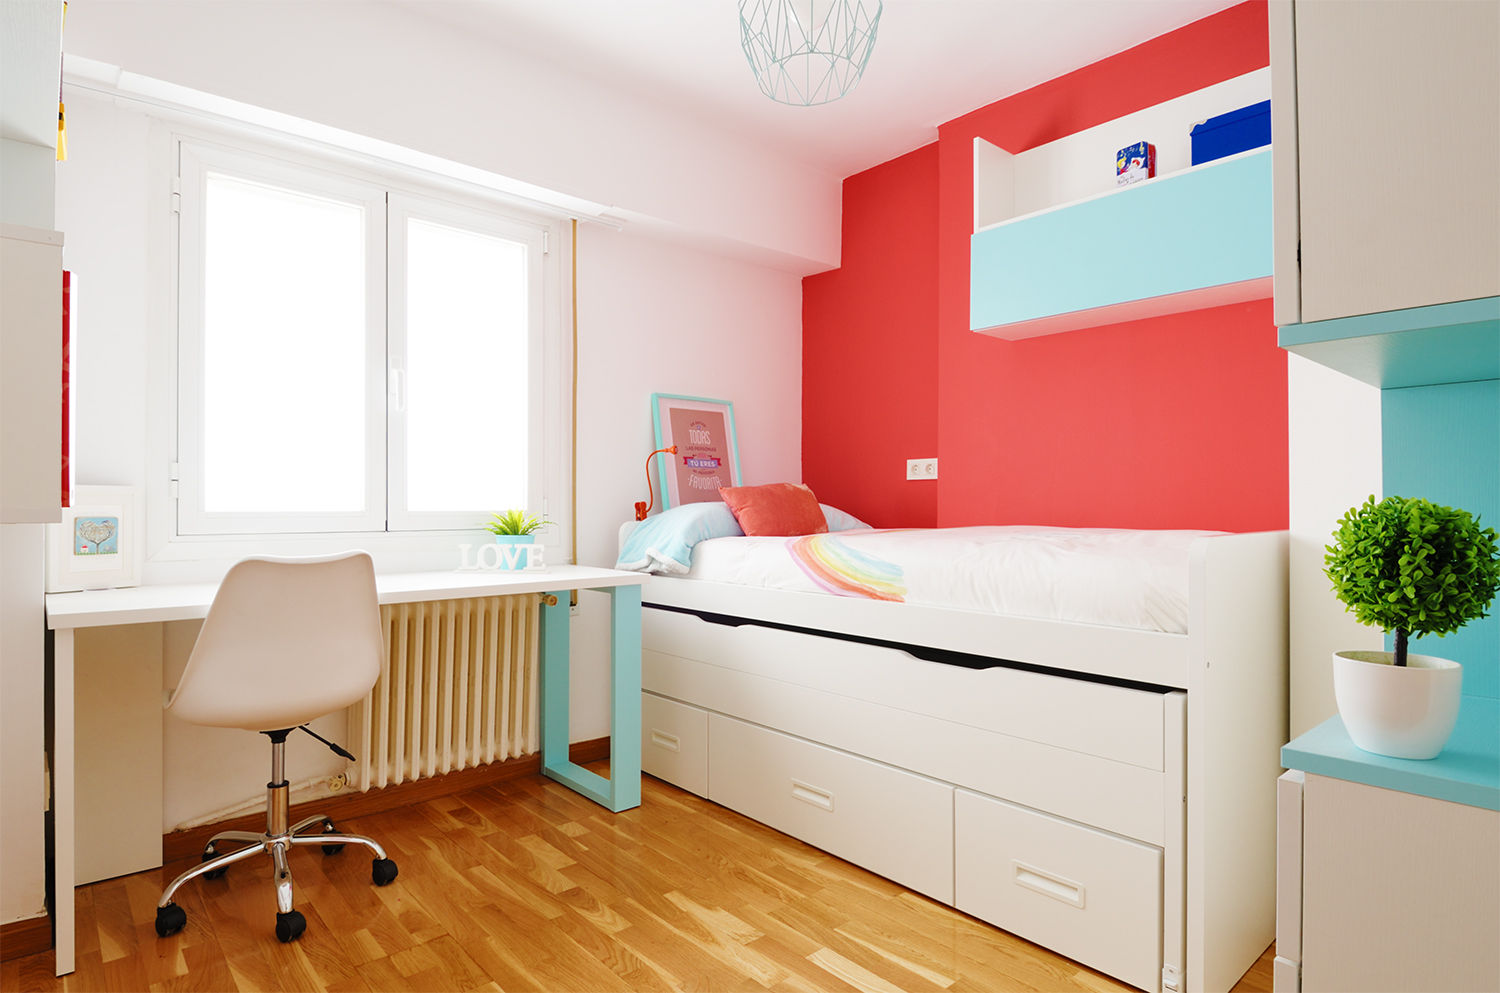 Un dormitorio de una niña de 11 años, Noelia Villalba Interiorista Noelia Villalba Interiorista Modern Çocuk Odası